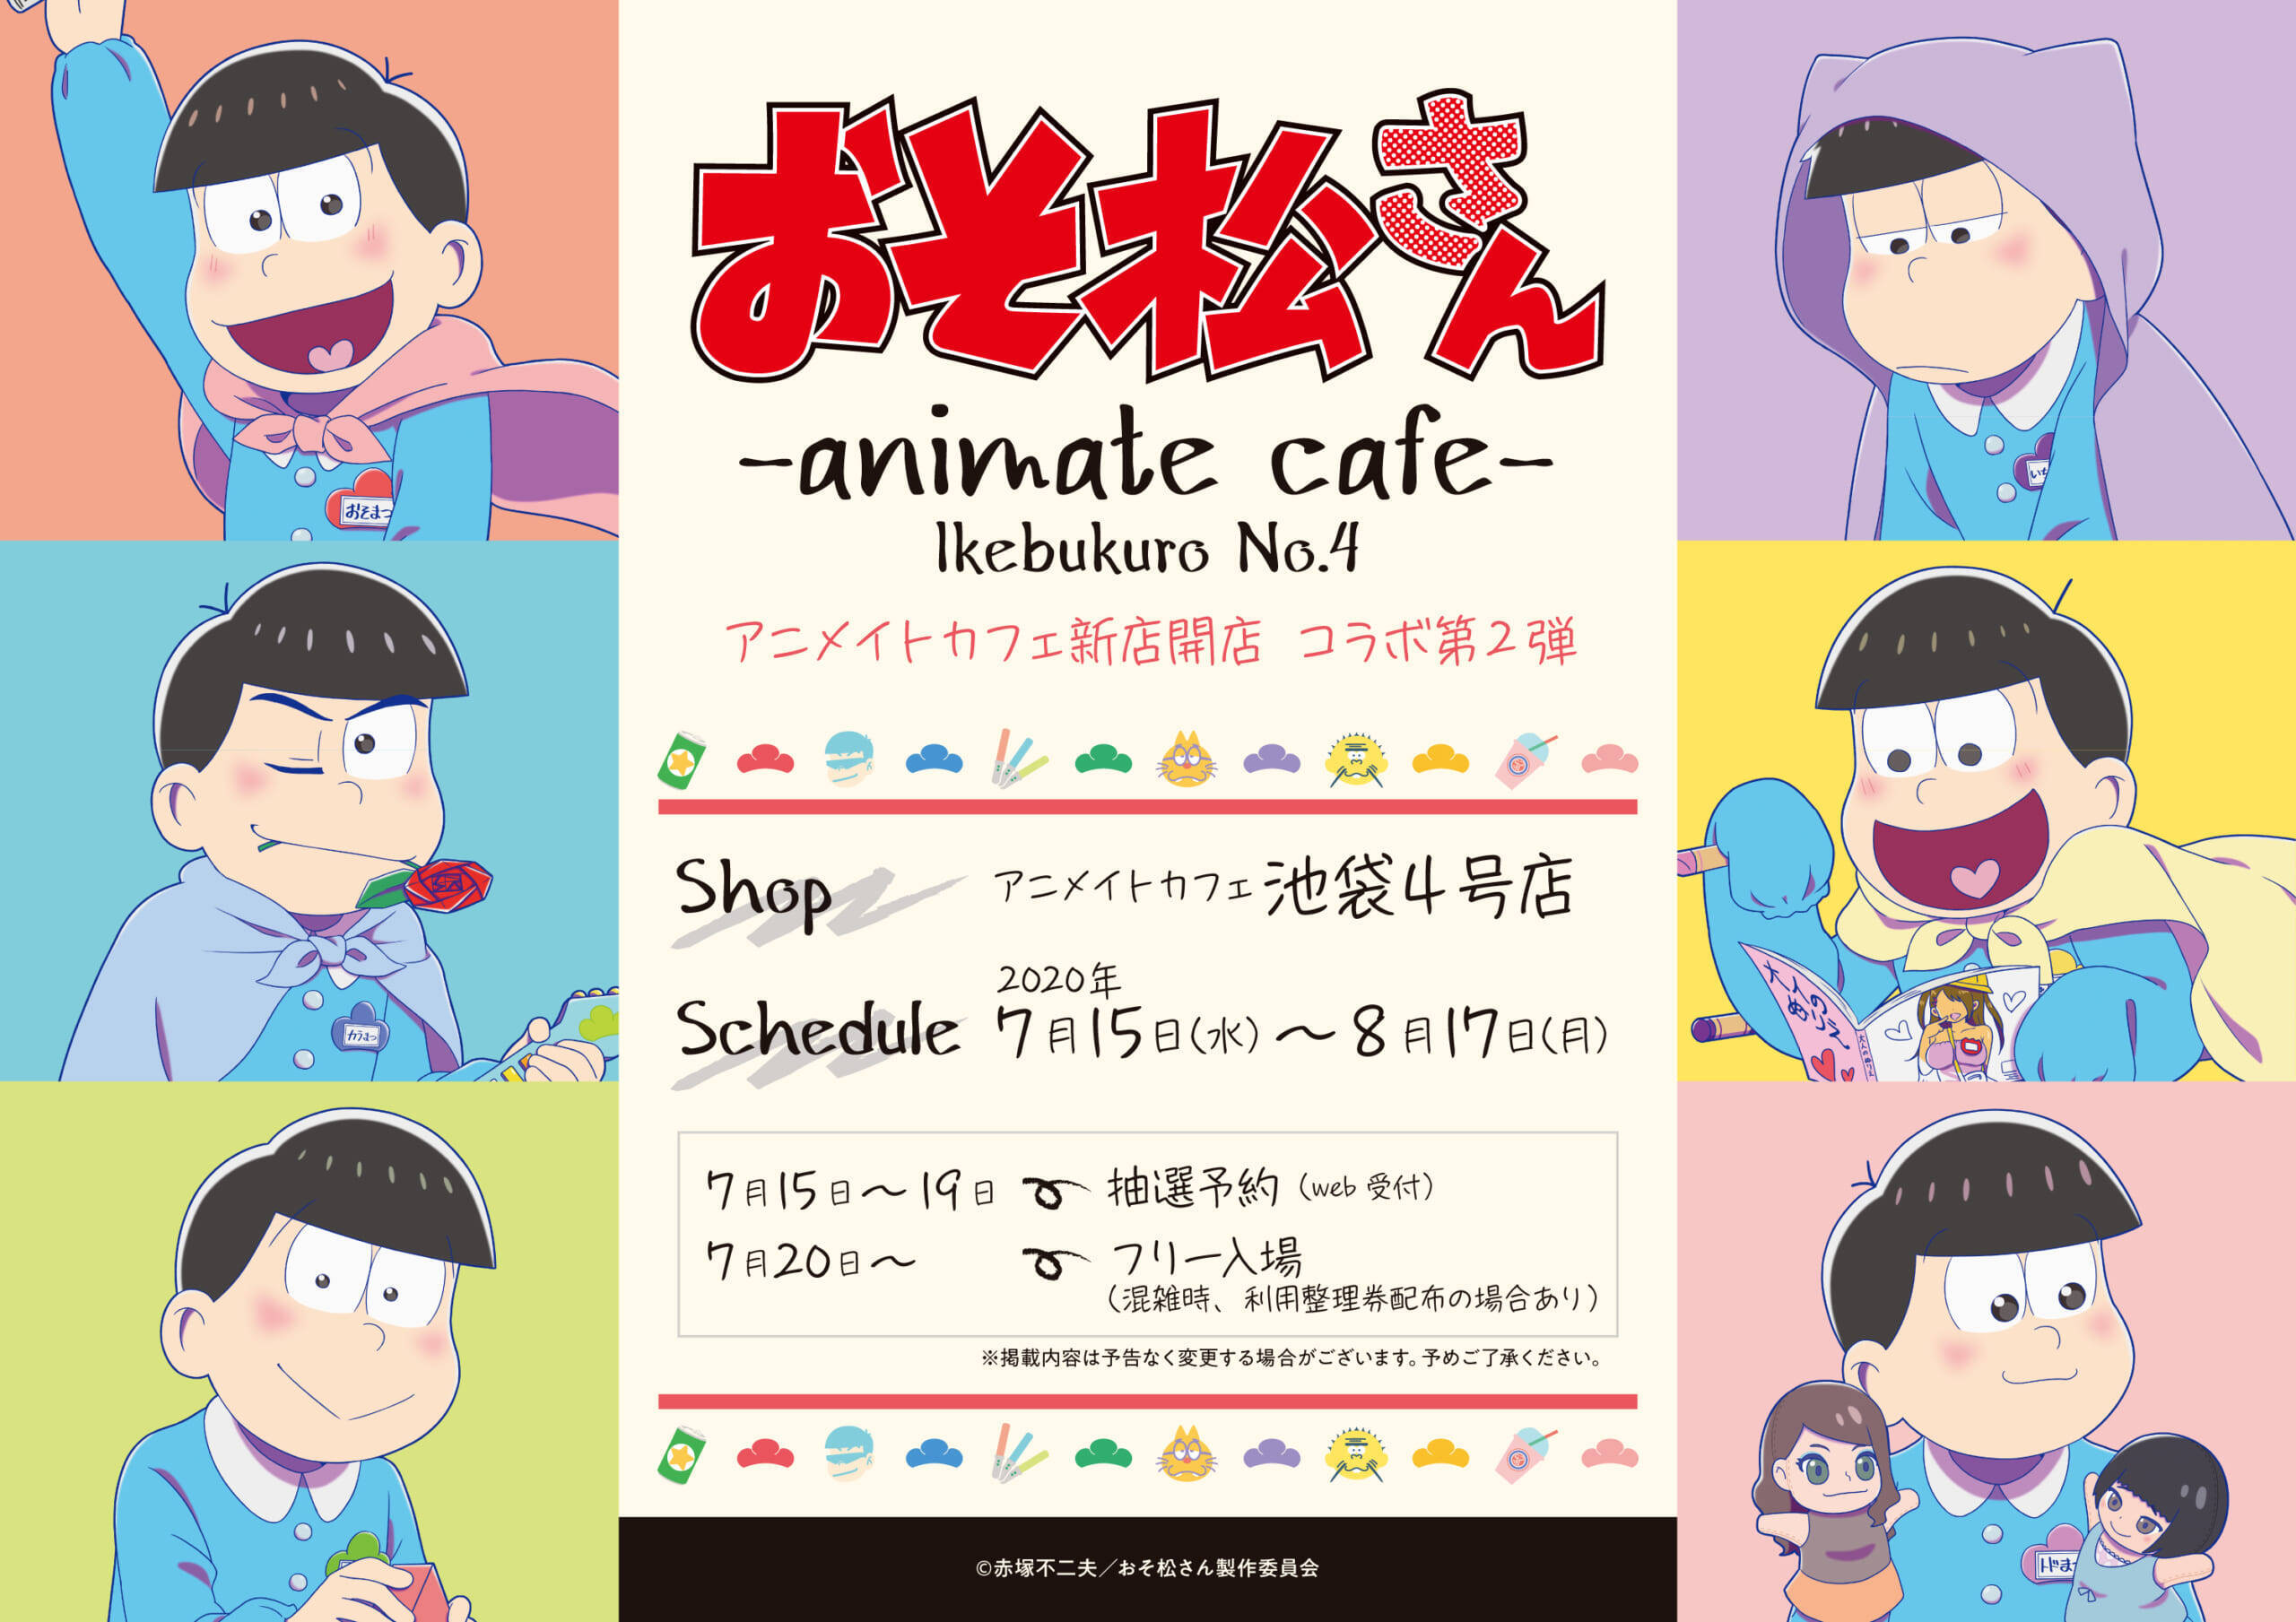 おそ松さん X アニメイトカフェ 幼稚園がテーマの描き下ろし公開 ドリンクメニュー グッズの販売も 年6月5日 エキサイトニュース